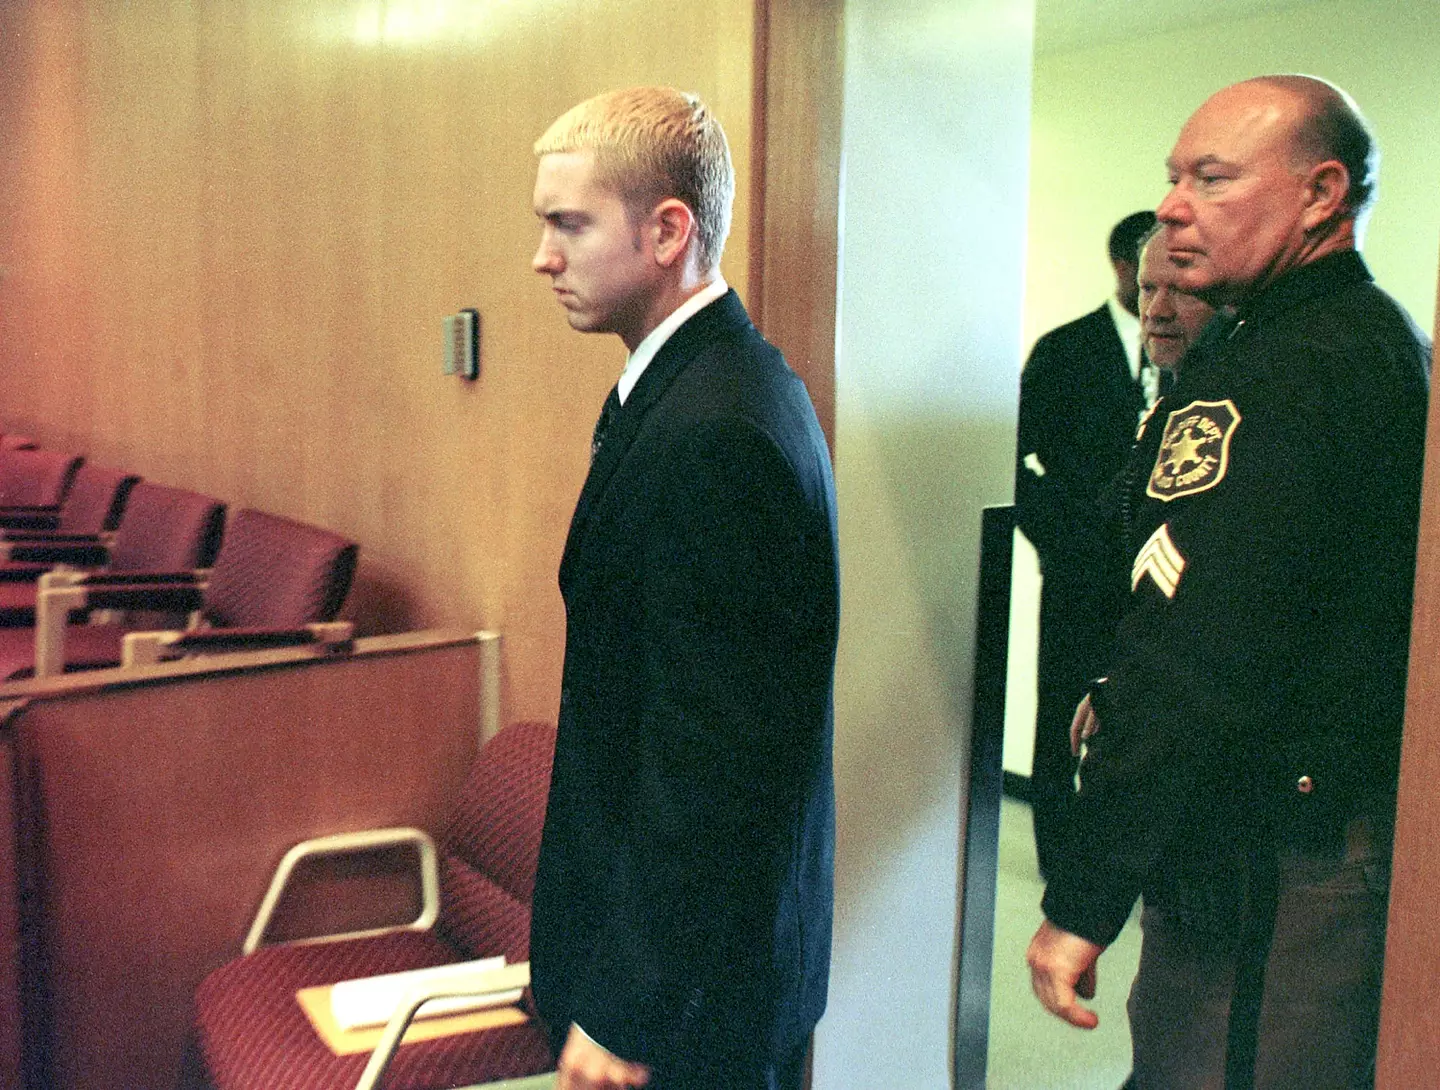 Eminem in court in 2001.